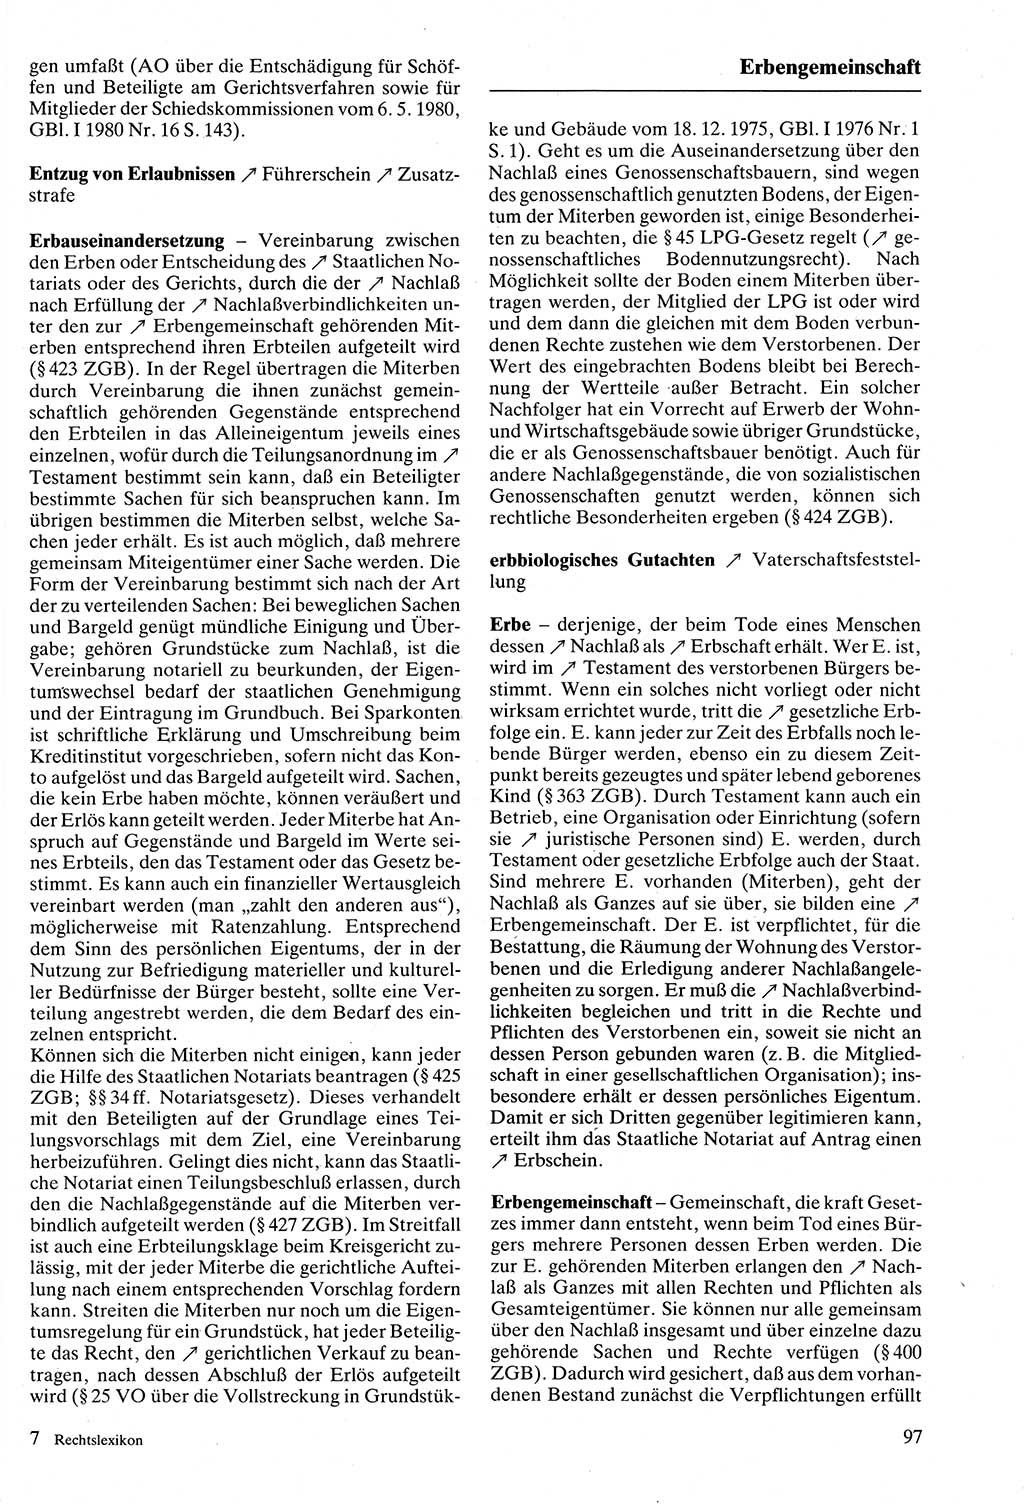 Rechtslexikon [Deutsche Demokratische Republik (DDR)] 1988, Seite 97 (Rechtslex. DDR 1988, S. 97)